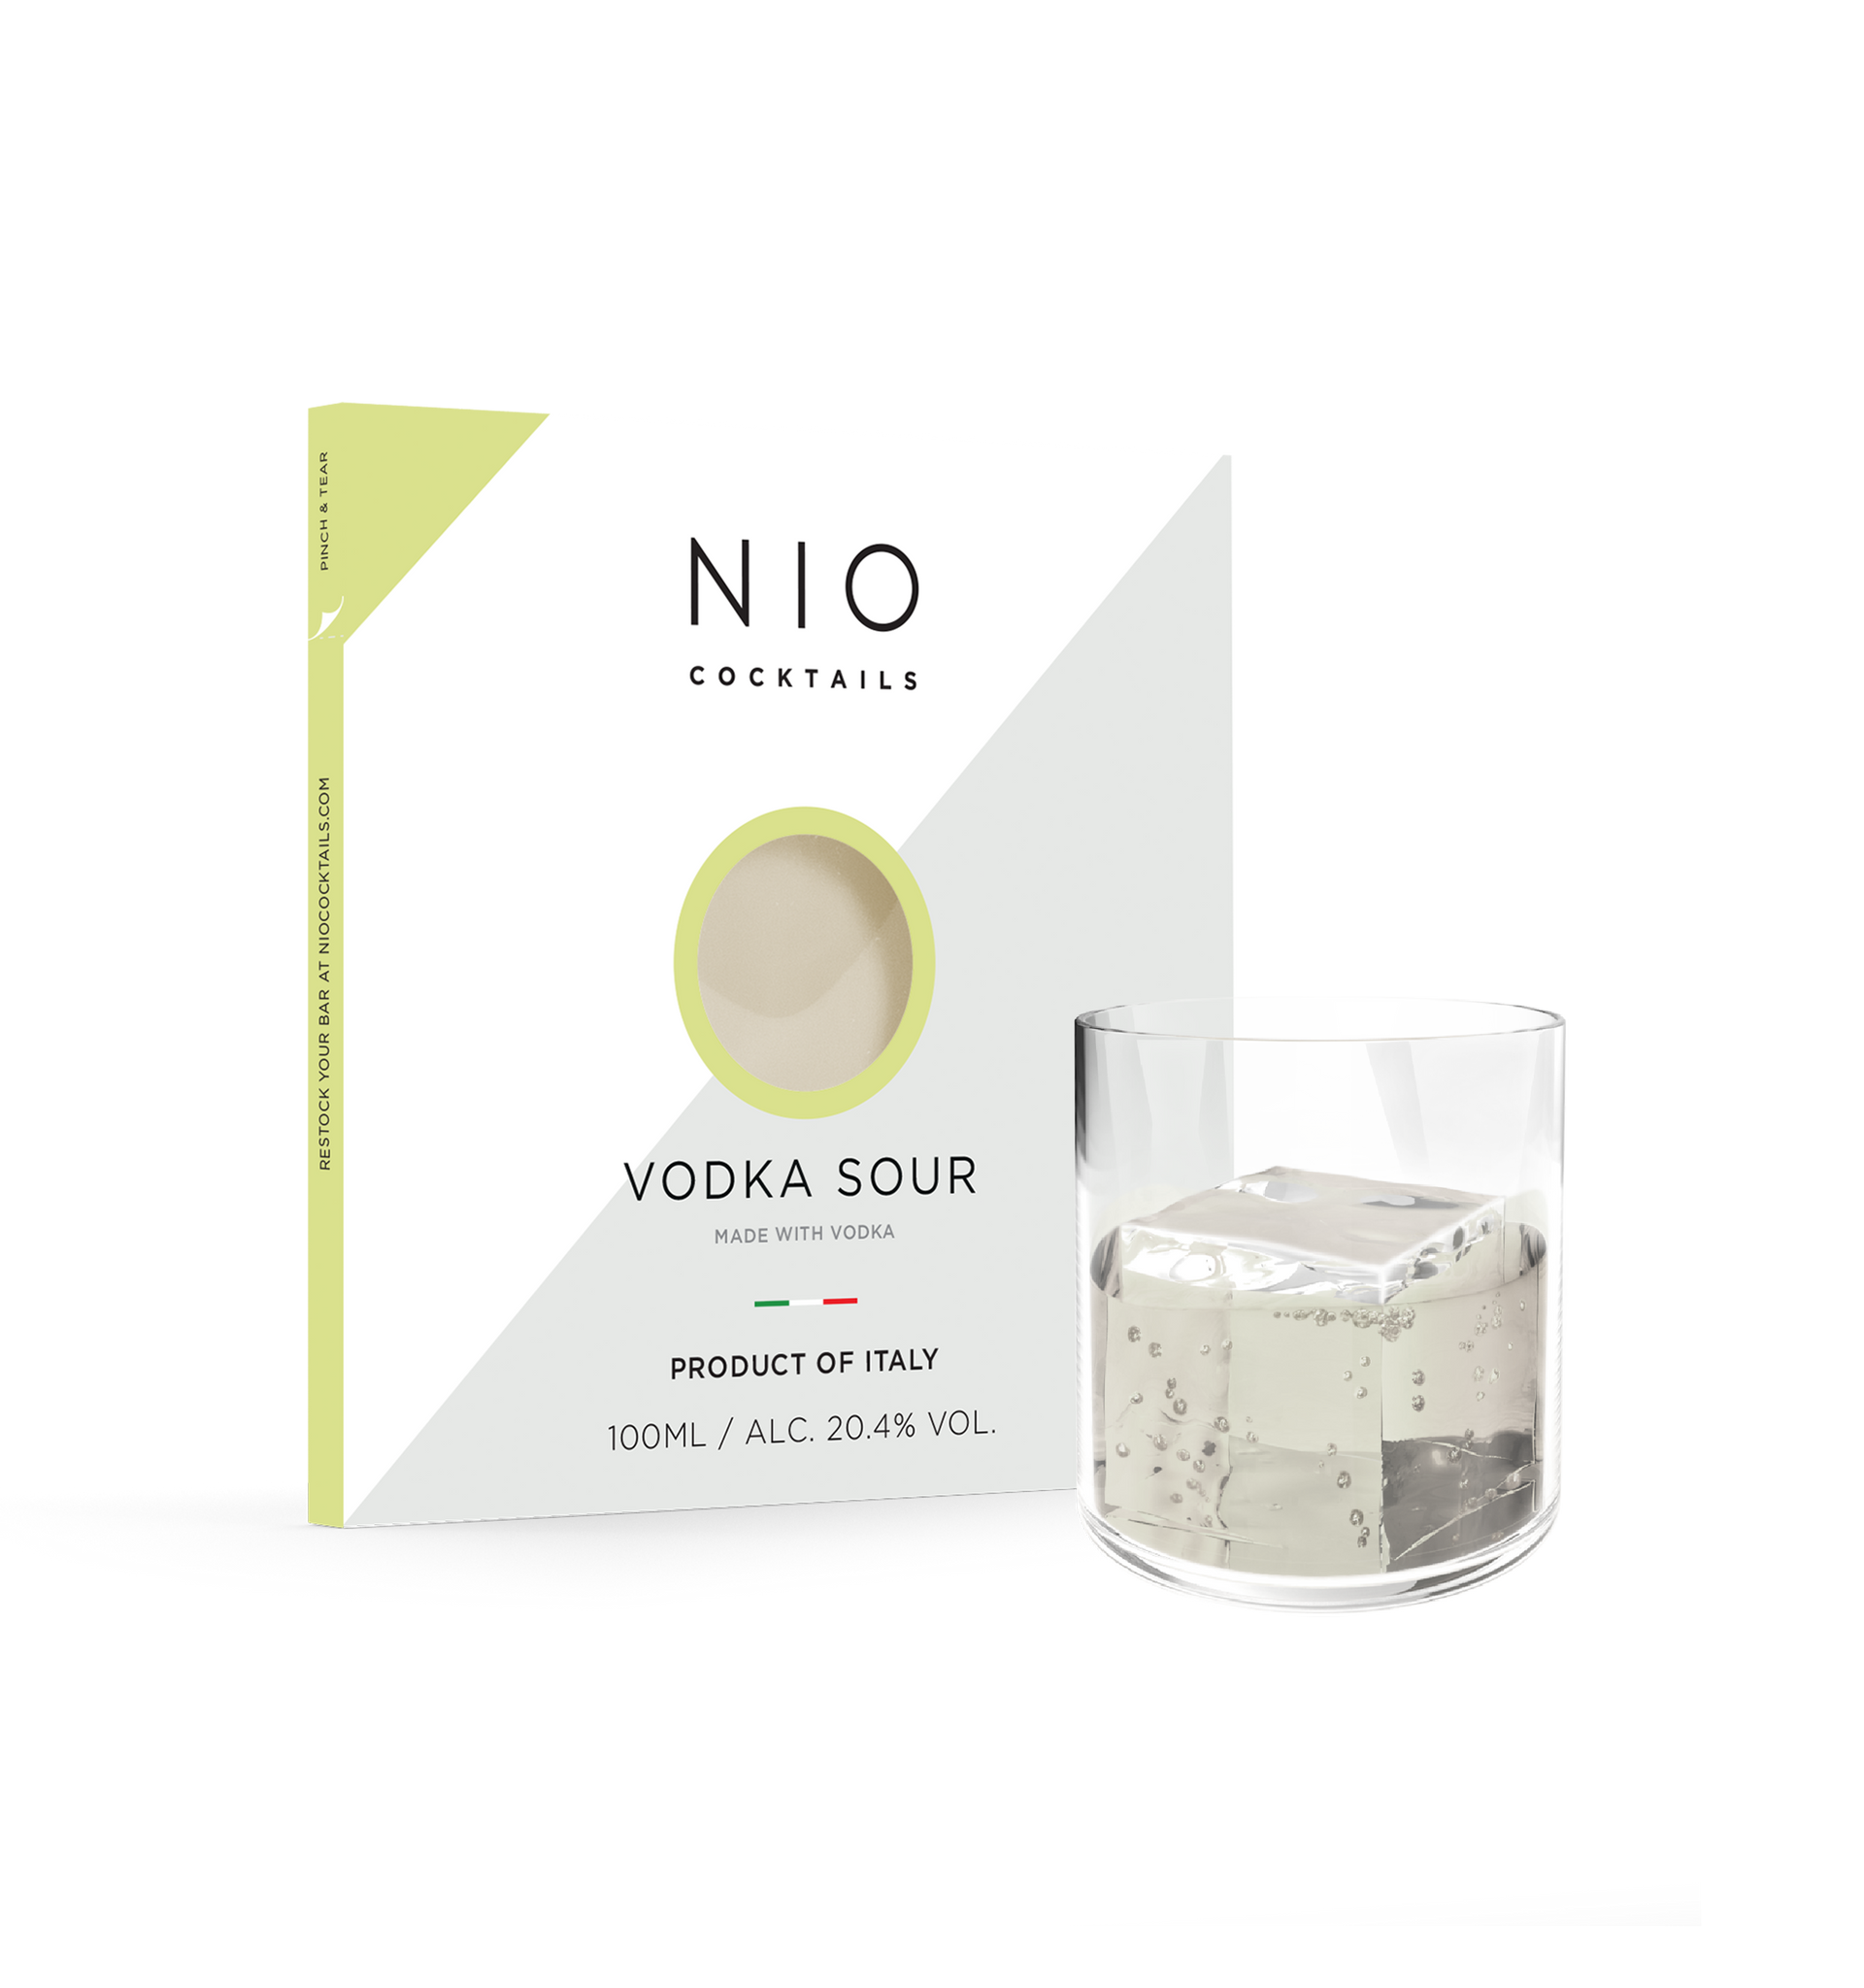 NIO COCKTAILS Vodka Sour glass